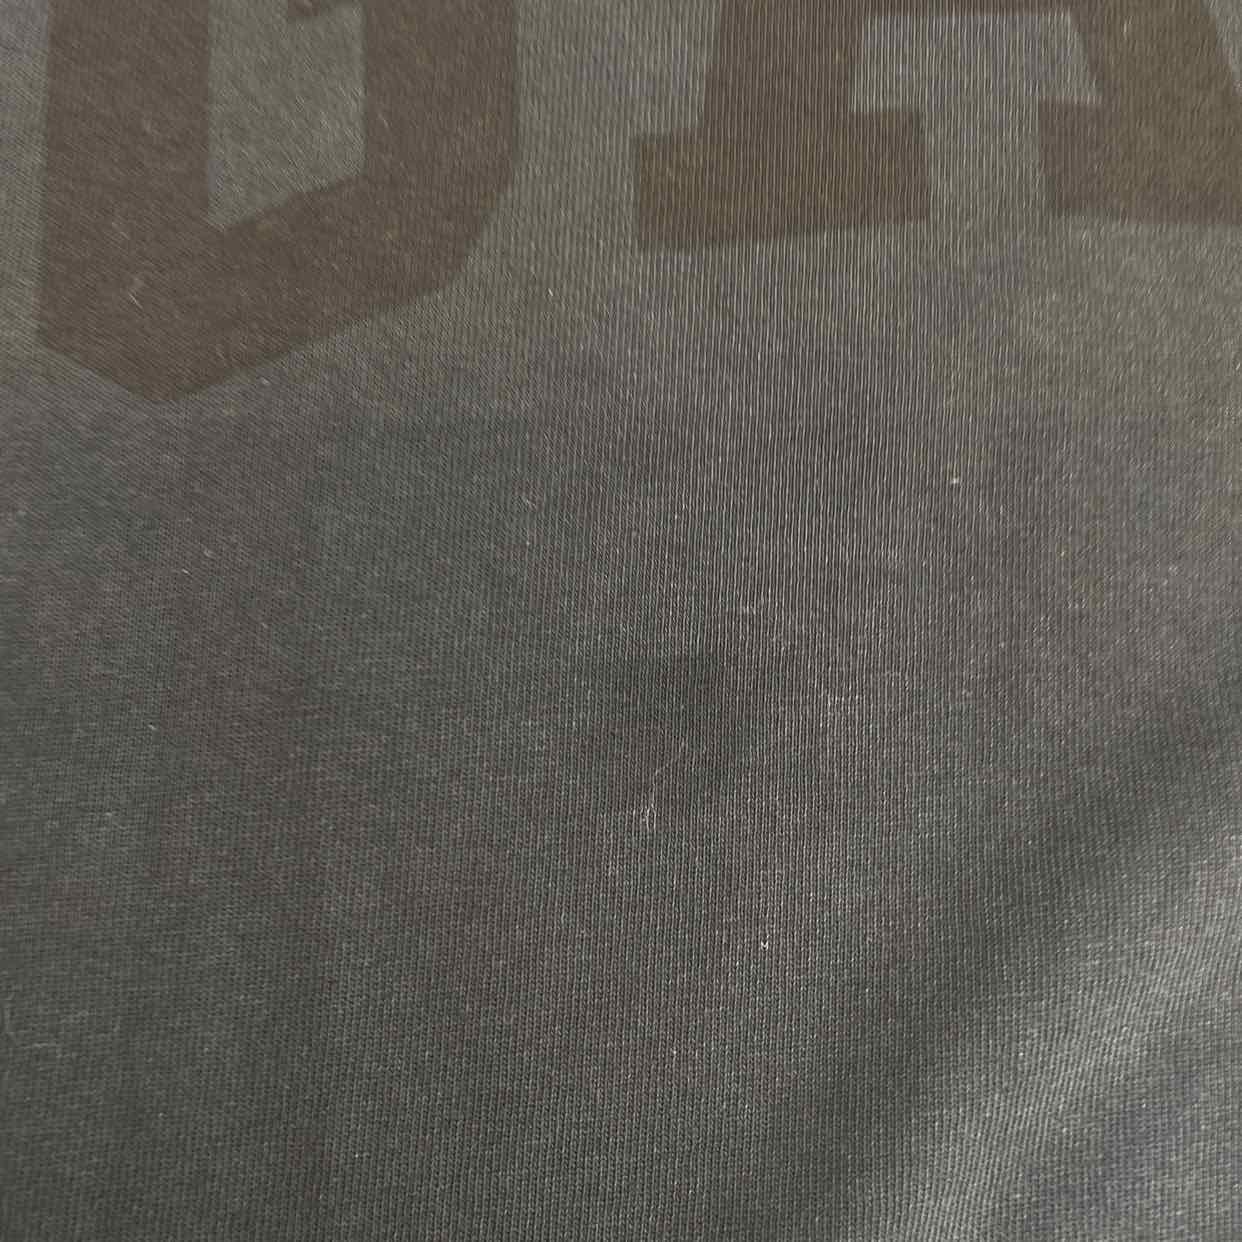 Yeezy T-Shirt "GAP DOVES" Black New Size XL